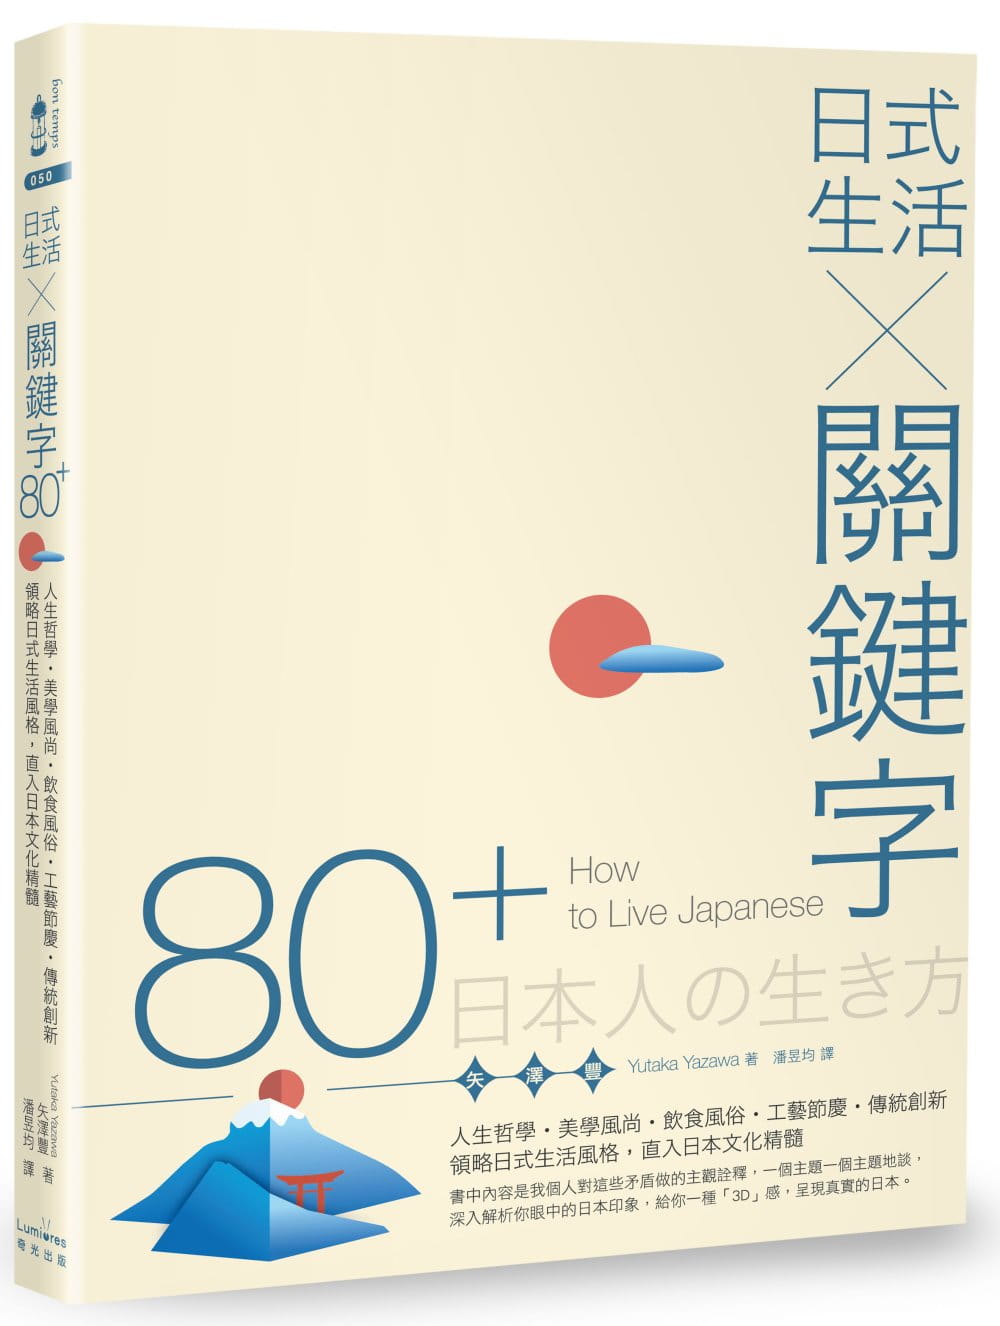 日式生活╳關鍵字80+：人生哲學•美學風尚•飲食風俗•工藝節慶•傳統創新，領略日式生活風格，直入日本文化精髓